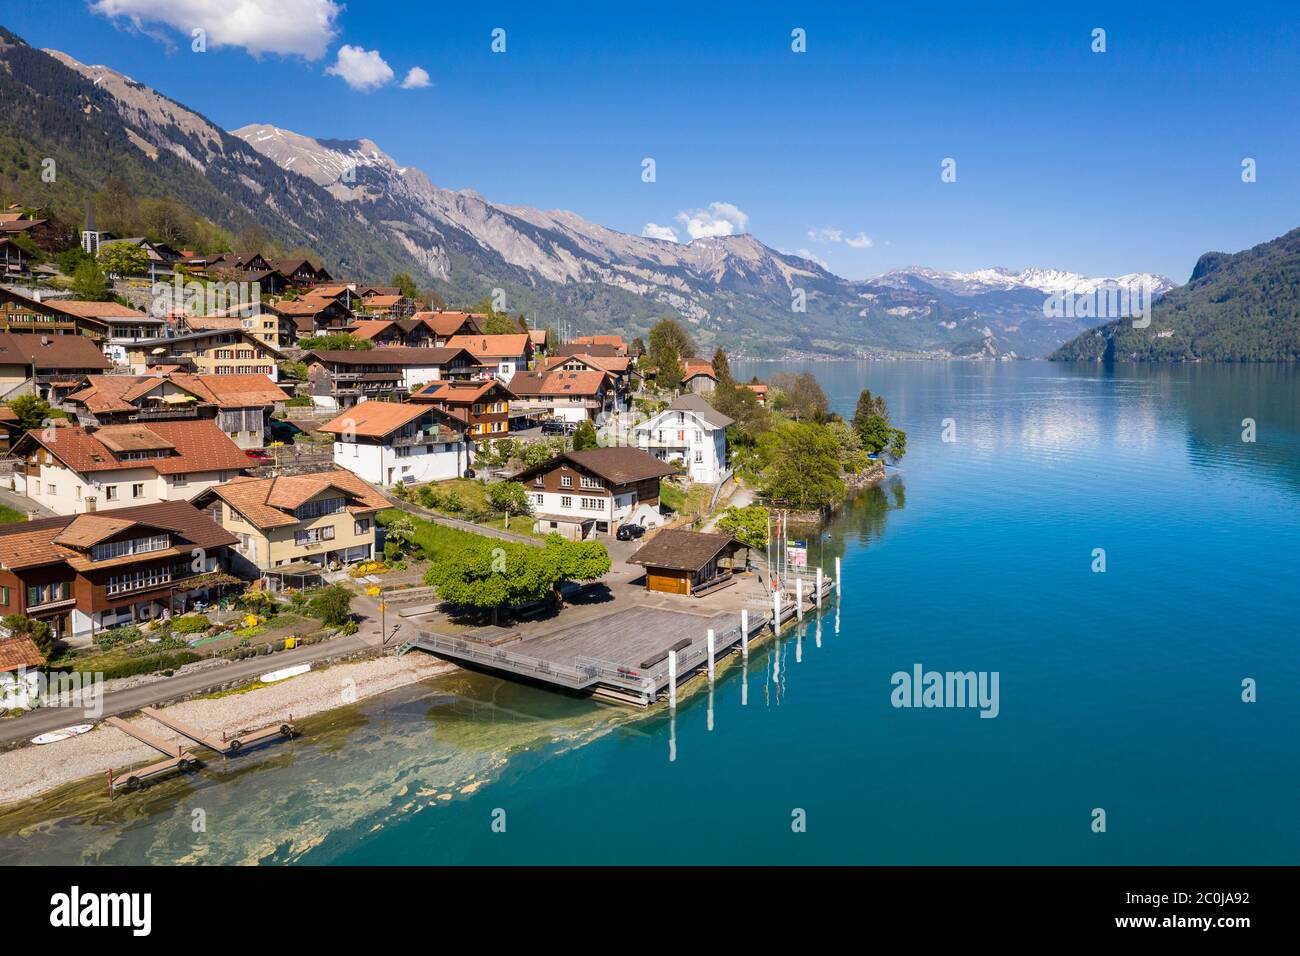 Village idyllique d'Oberried au bord du lac alpin de Brienz à Berne, Suisse par beau temps Banque D'Images